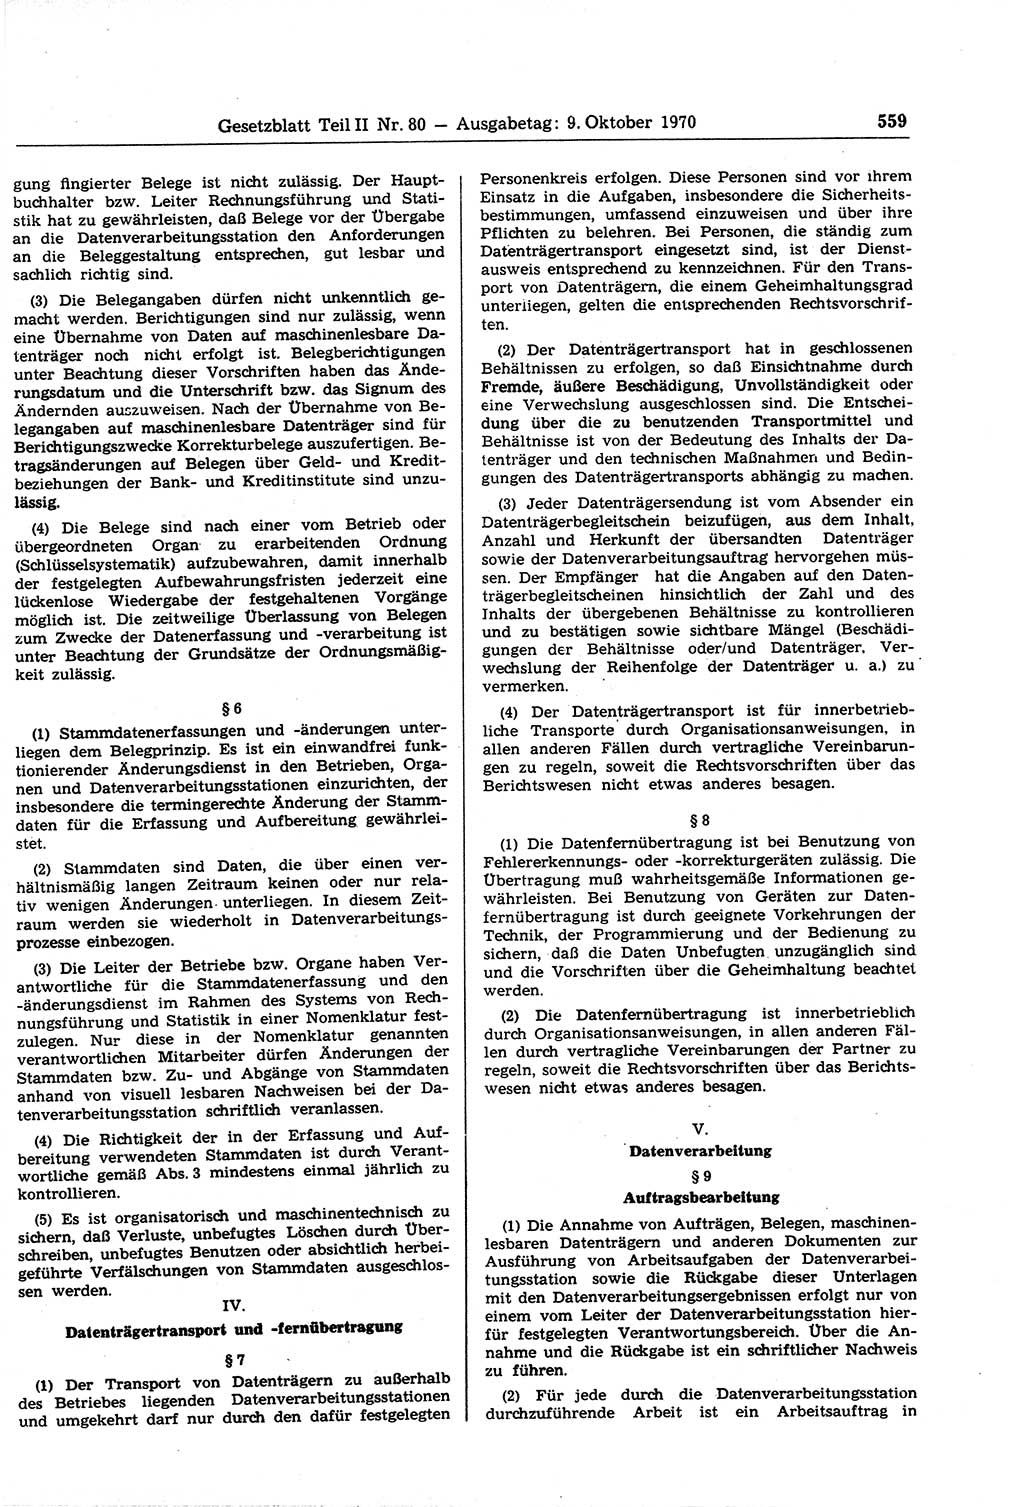 Gesetzblatt (GBl.) der Deutschen Demokratischen Republik (DDR) Teil ⅠⅠ 1970, Seite 559 (GBl. DDR ⅠⅠ 1970, S. 559)